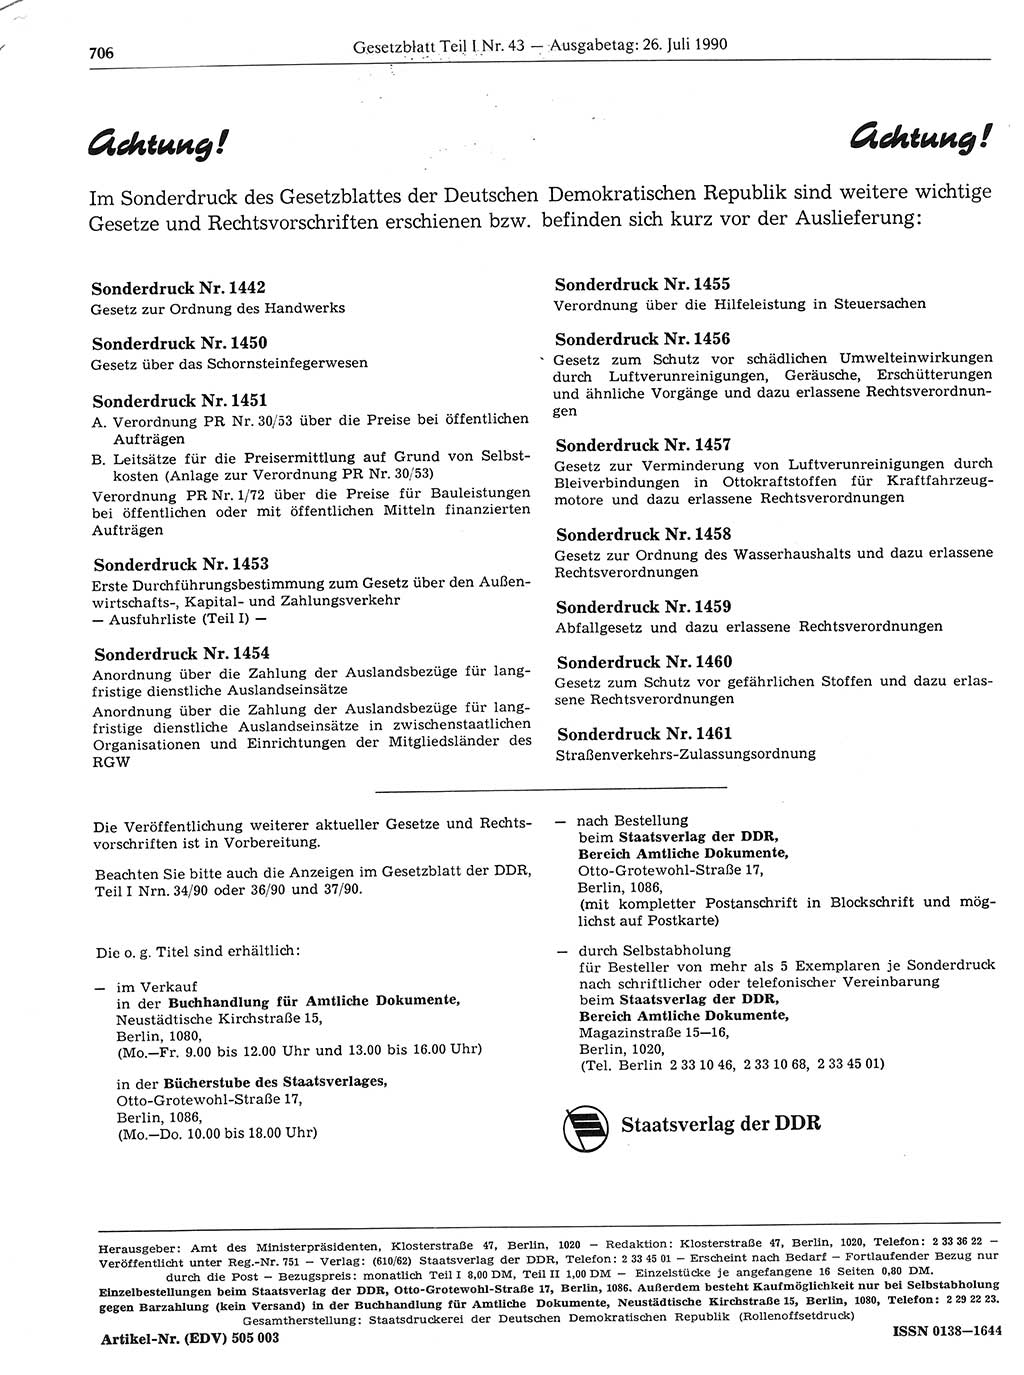 Gesetzblatt (GBl.) der Deutschen Demokratischen Republik (DDR) Teil Ⅰ 1990, Seite 706 (GBl. DDR Ⅰ 1990, S. 706)